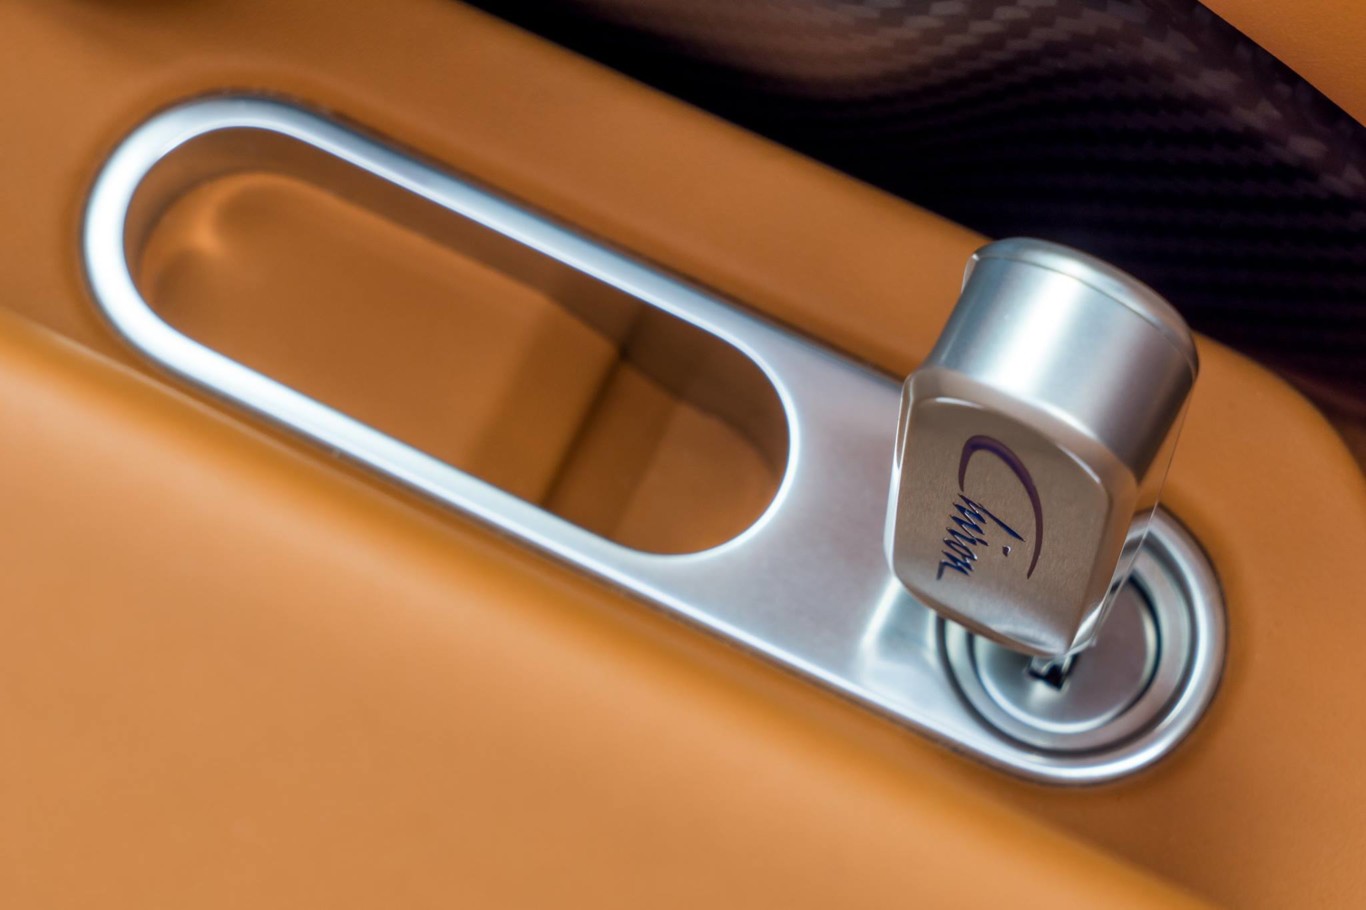 ¿Sabes para qué sirve la segunda llave del Bugatti Chiron?